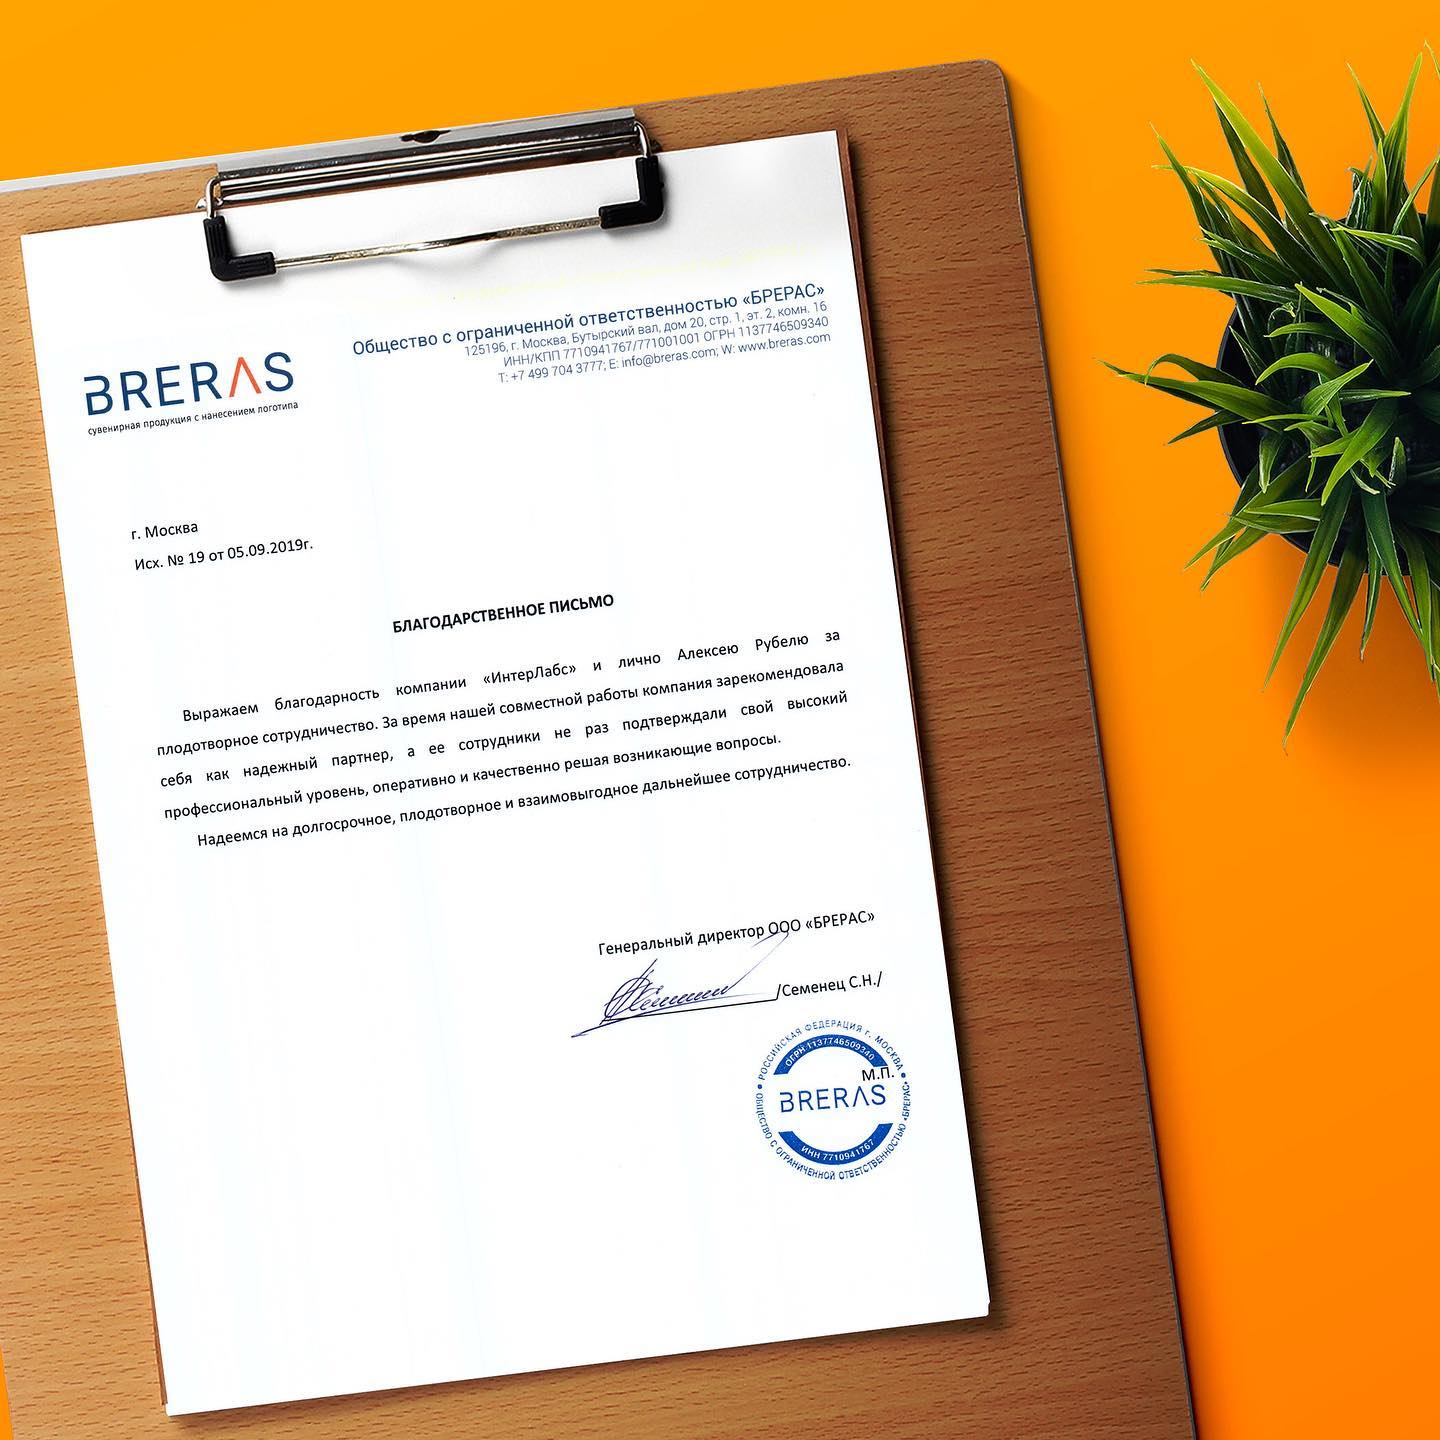 Благодарственное письмо от Breras. Компания специализируется на корпоративных сувенирах.